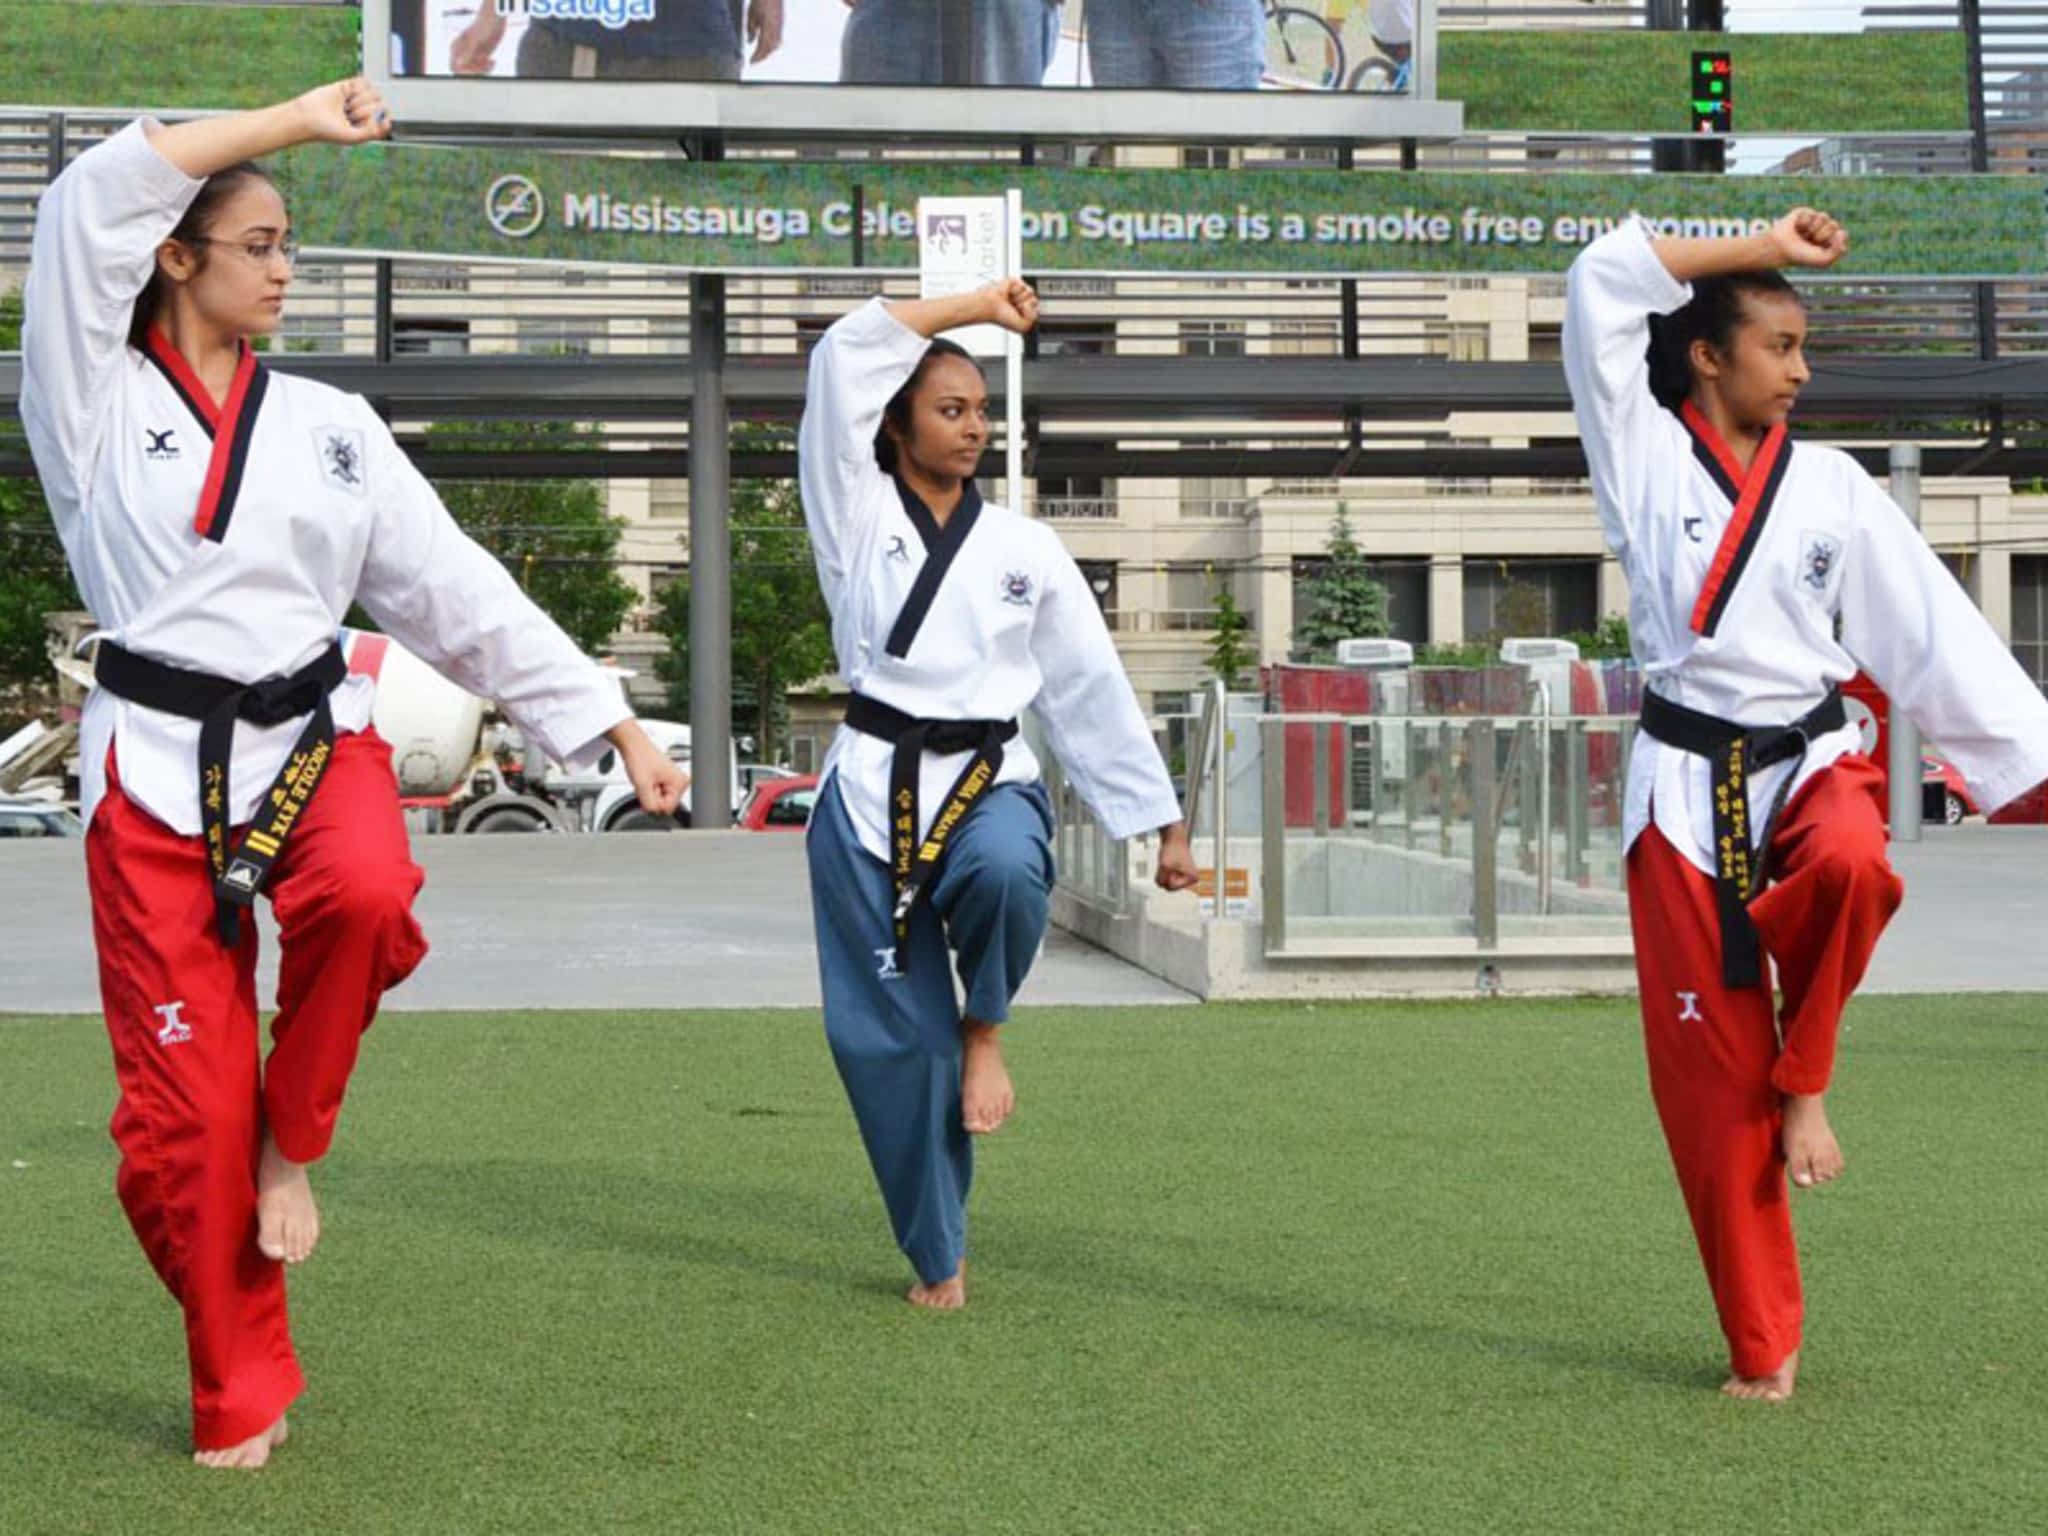 photo Mississauga Taekwondo